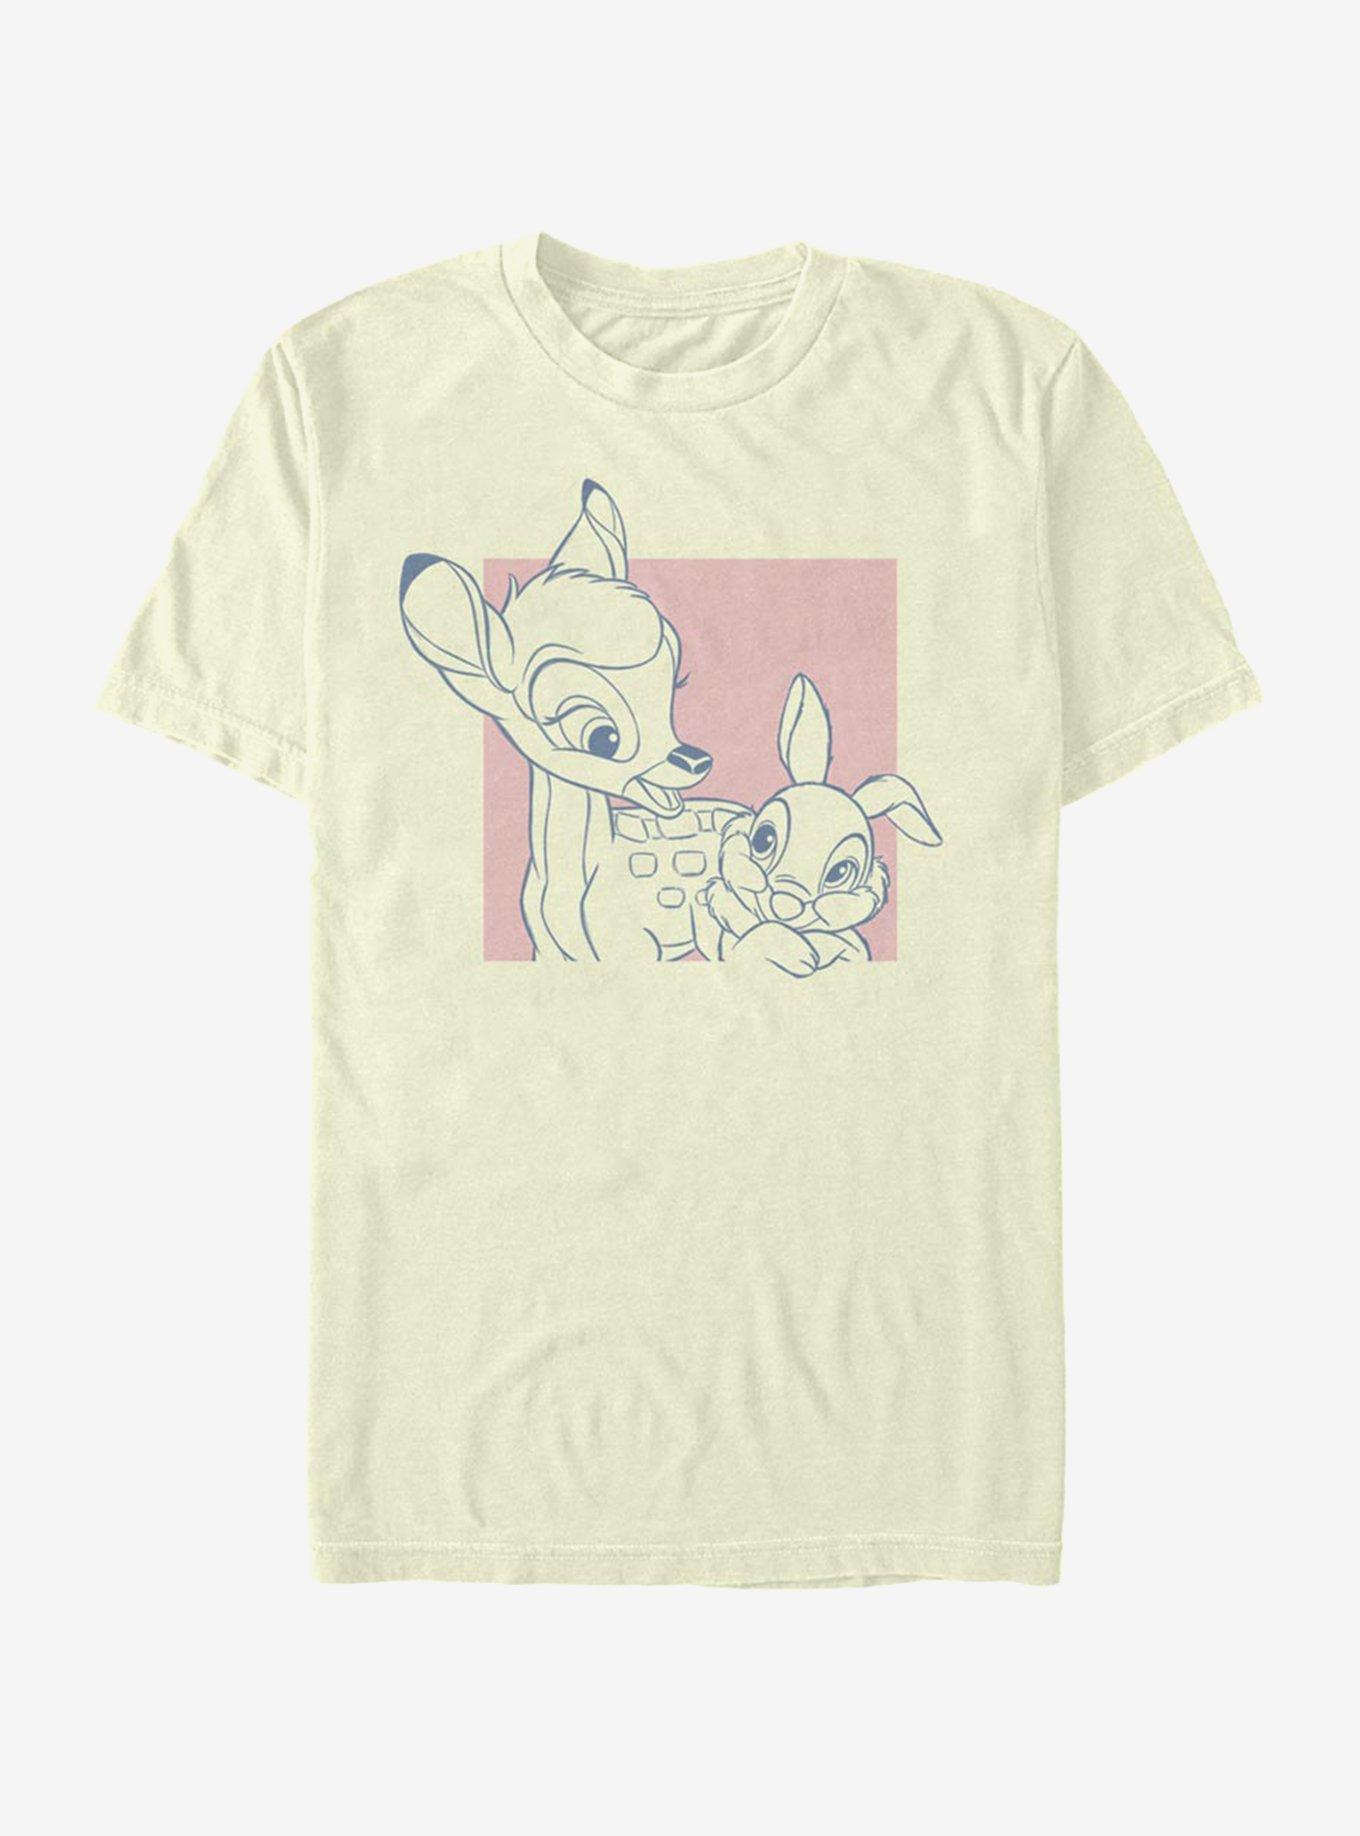 Disney Bambi Thumper Square T-Shirt